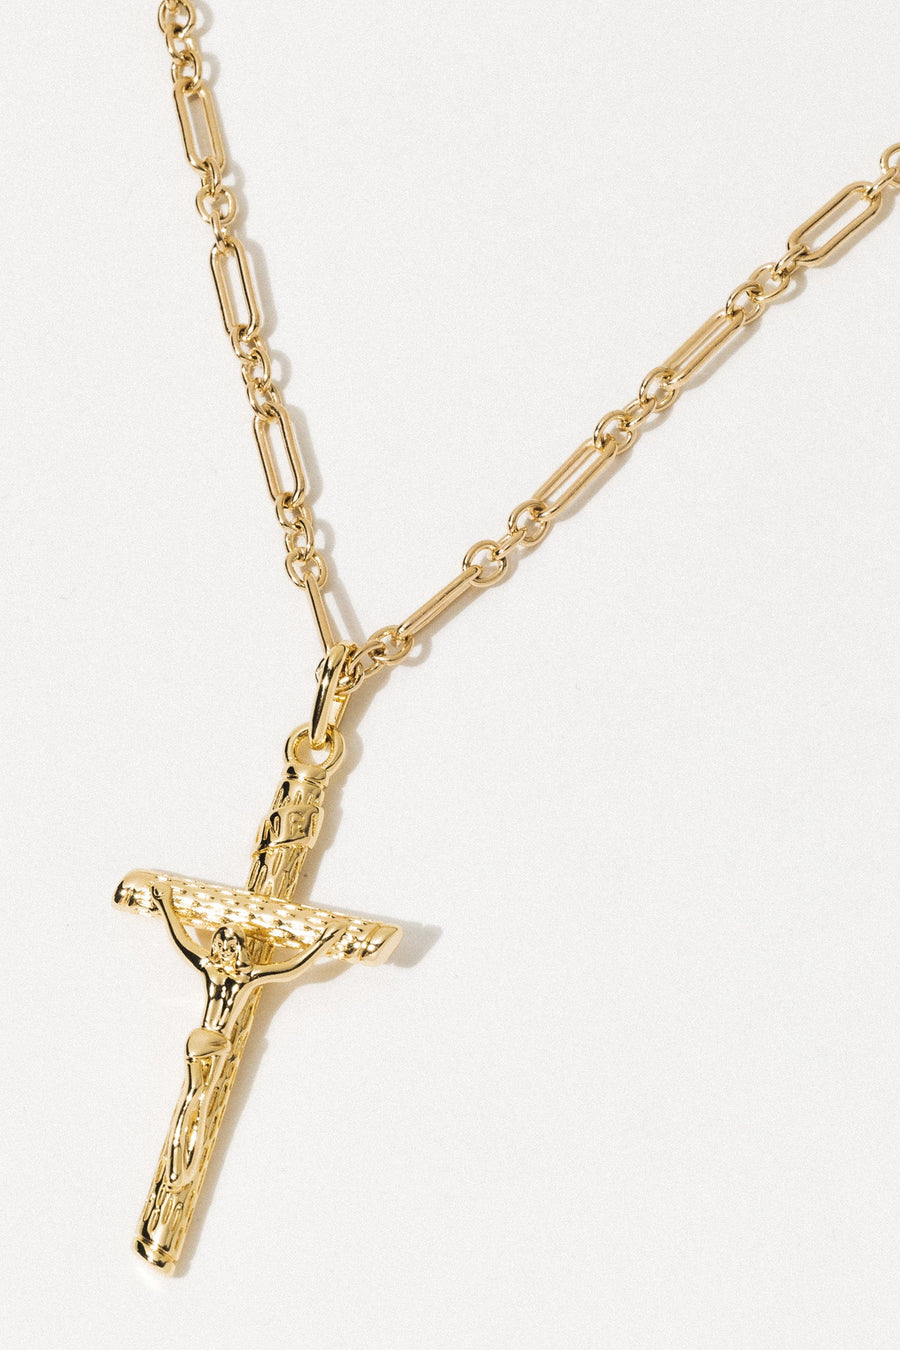 Dona Italia Jewelry Gold / 15 Inches The Pietà Necklace